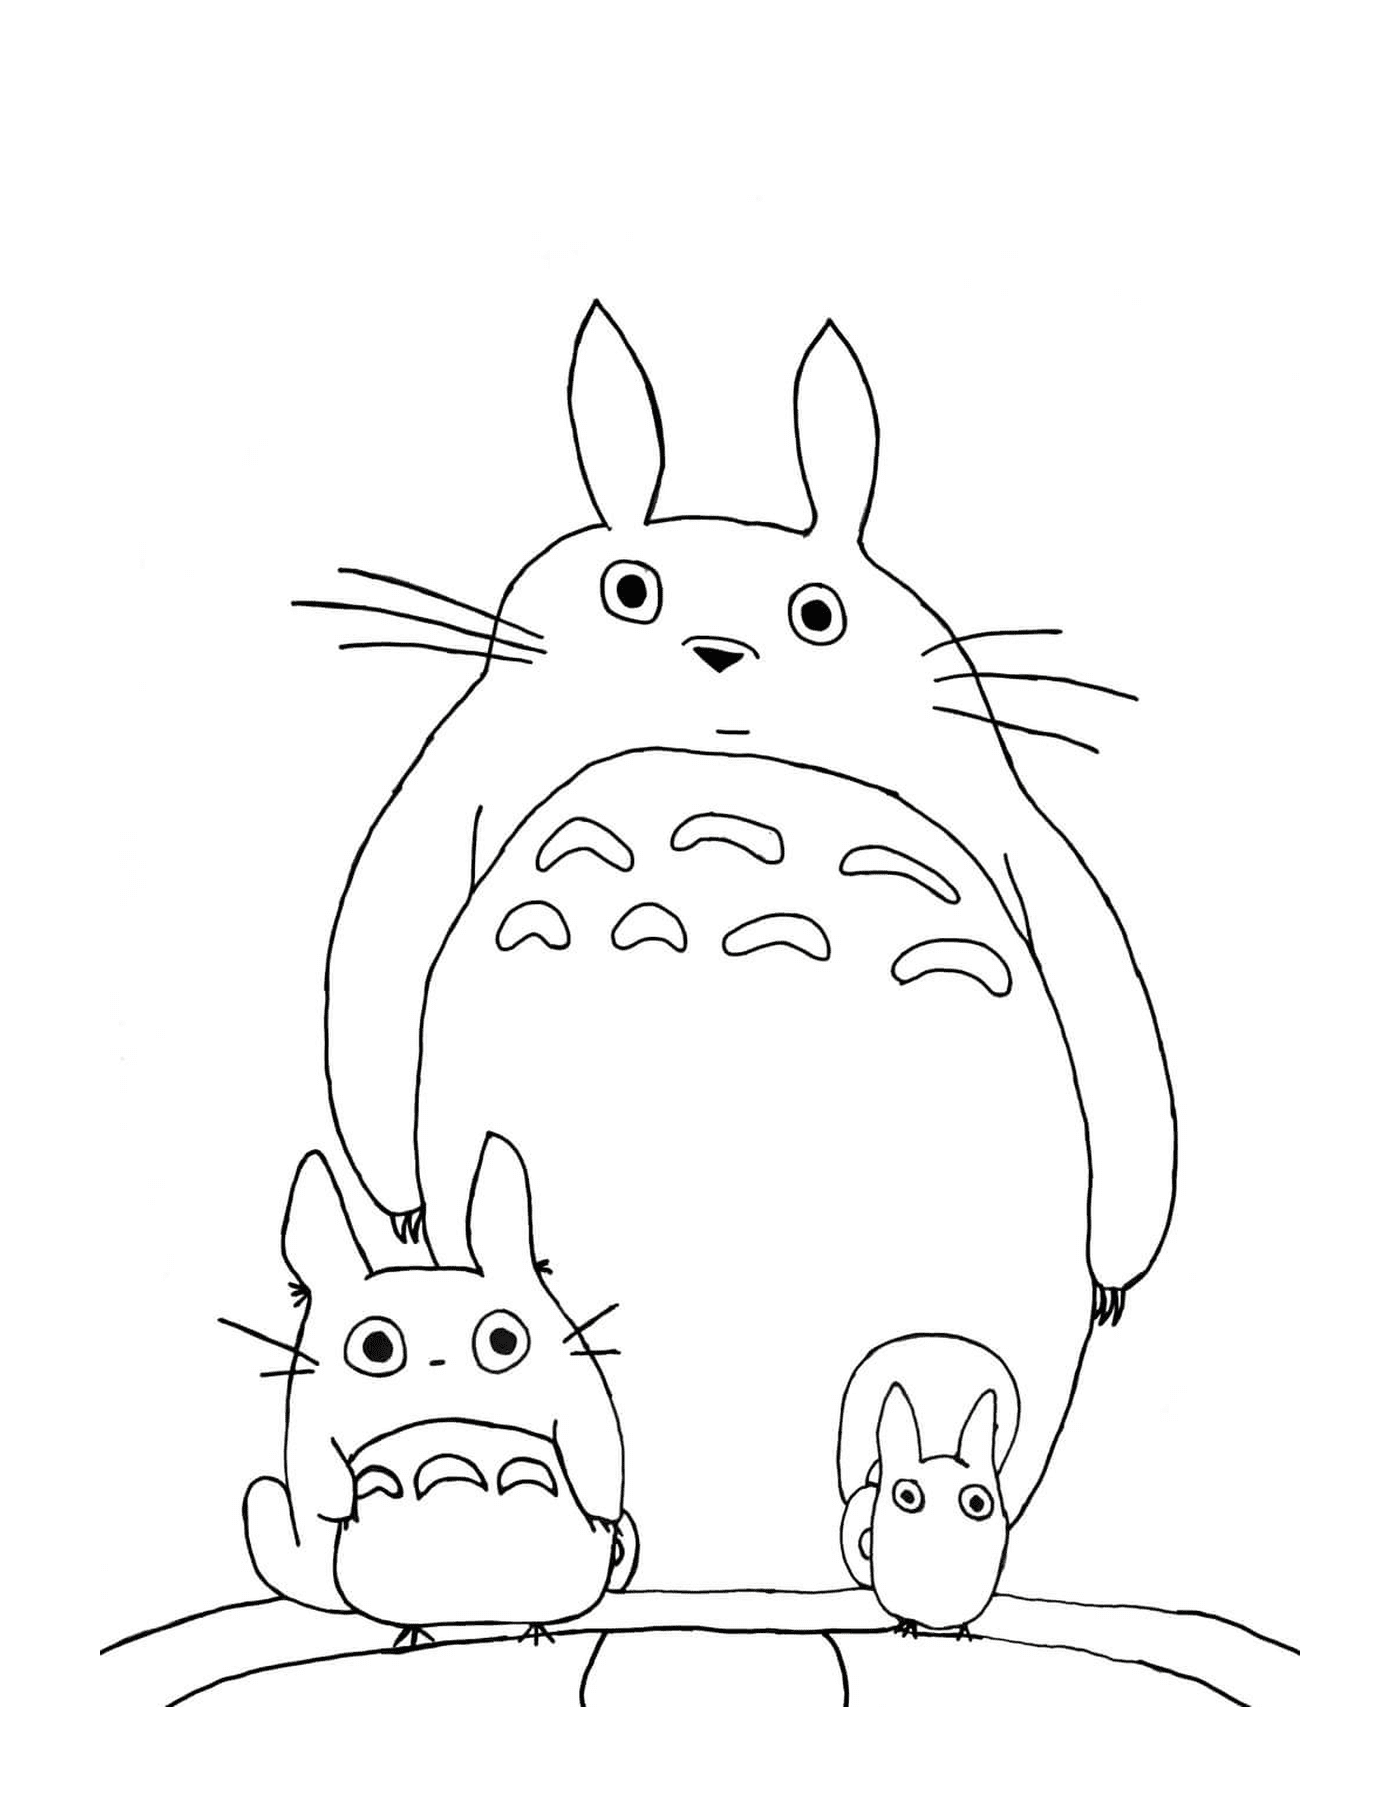  Totoro e um cão de pé lado a lado 